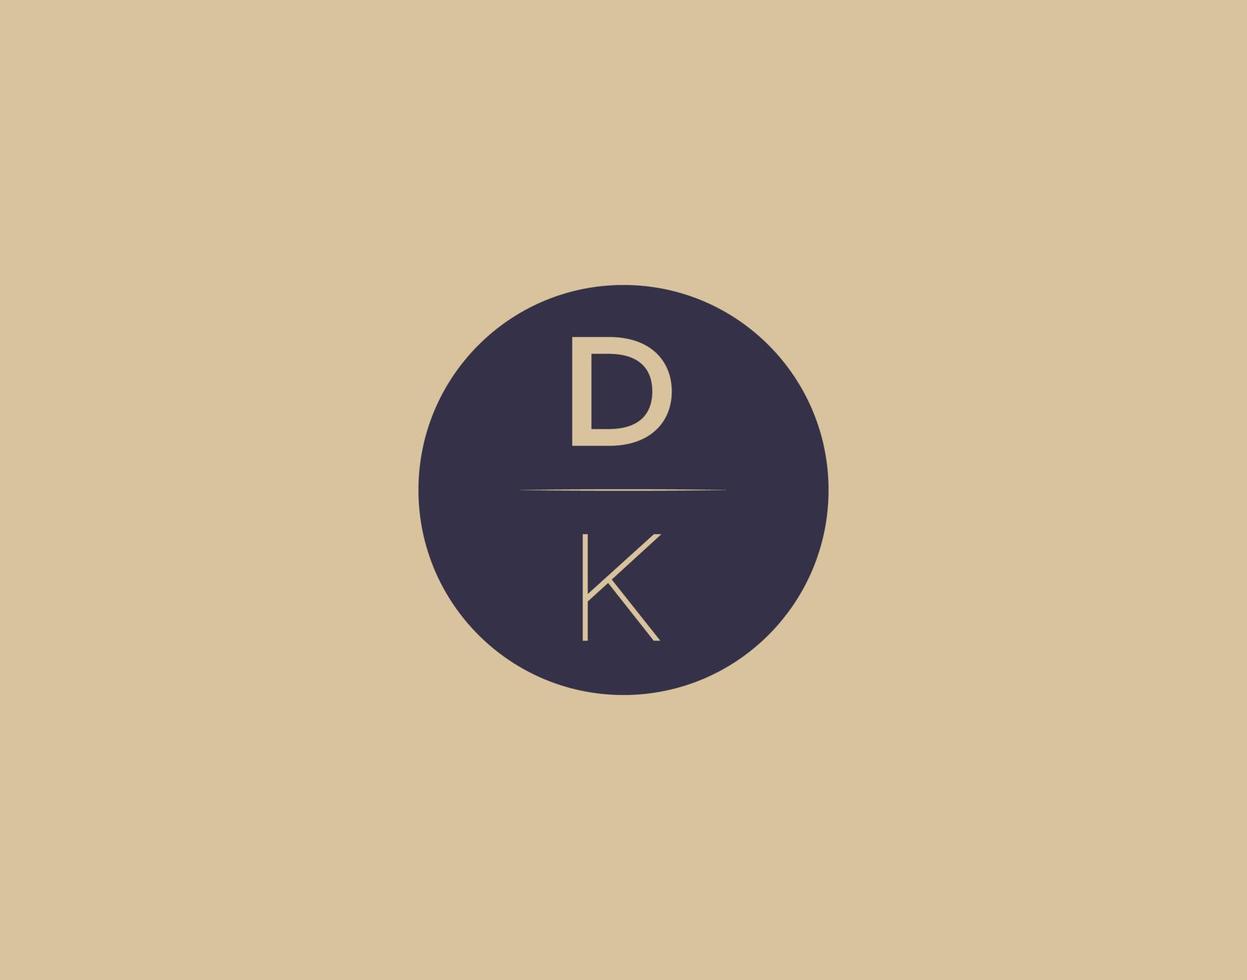 Imágenes de vector de diseño de logotipo elegante moderno de letra dk